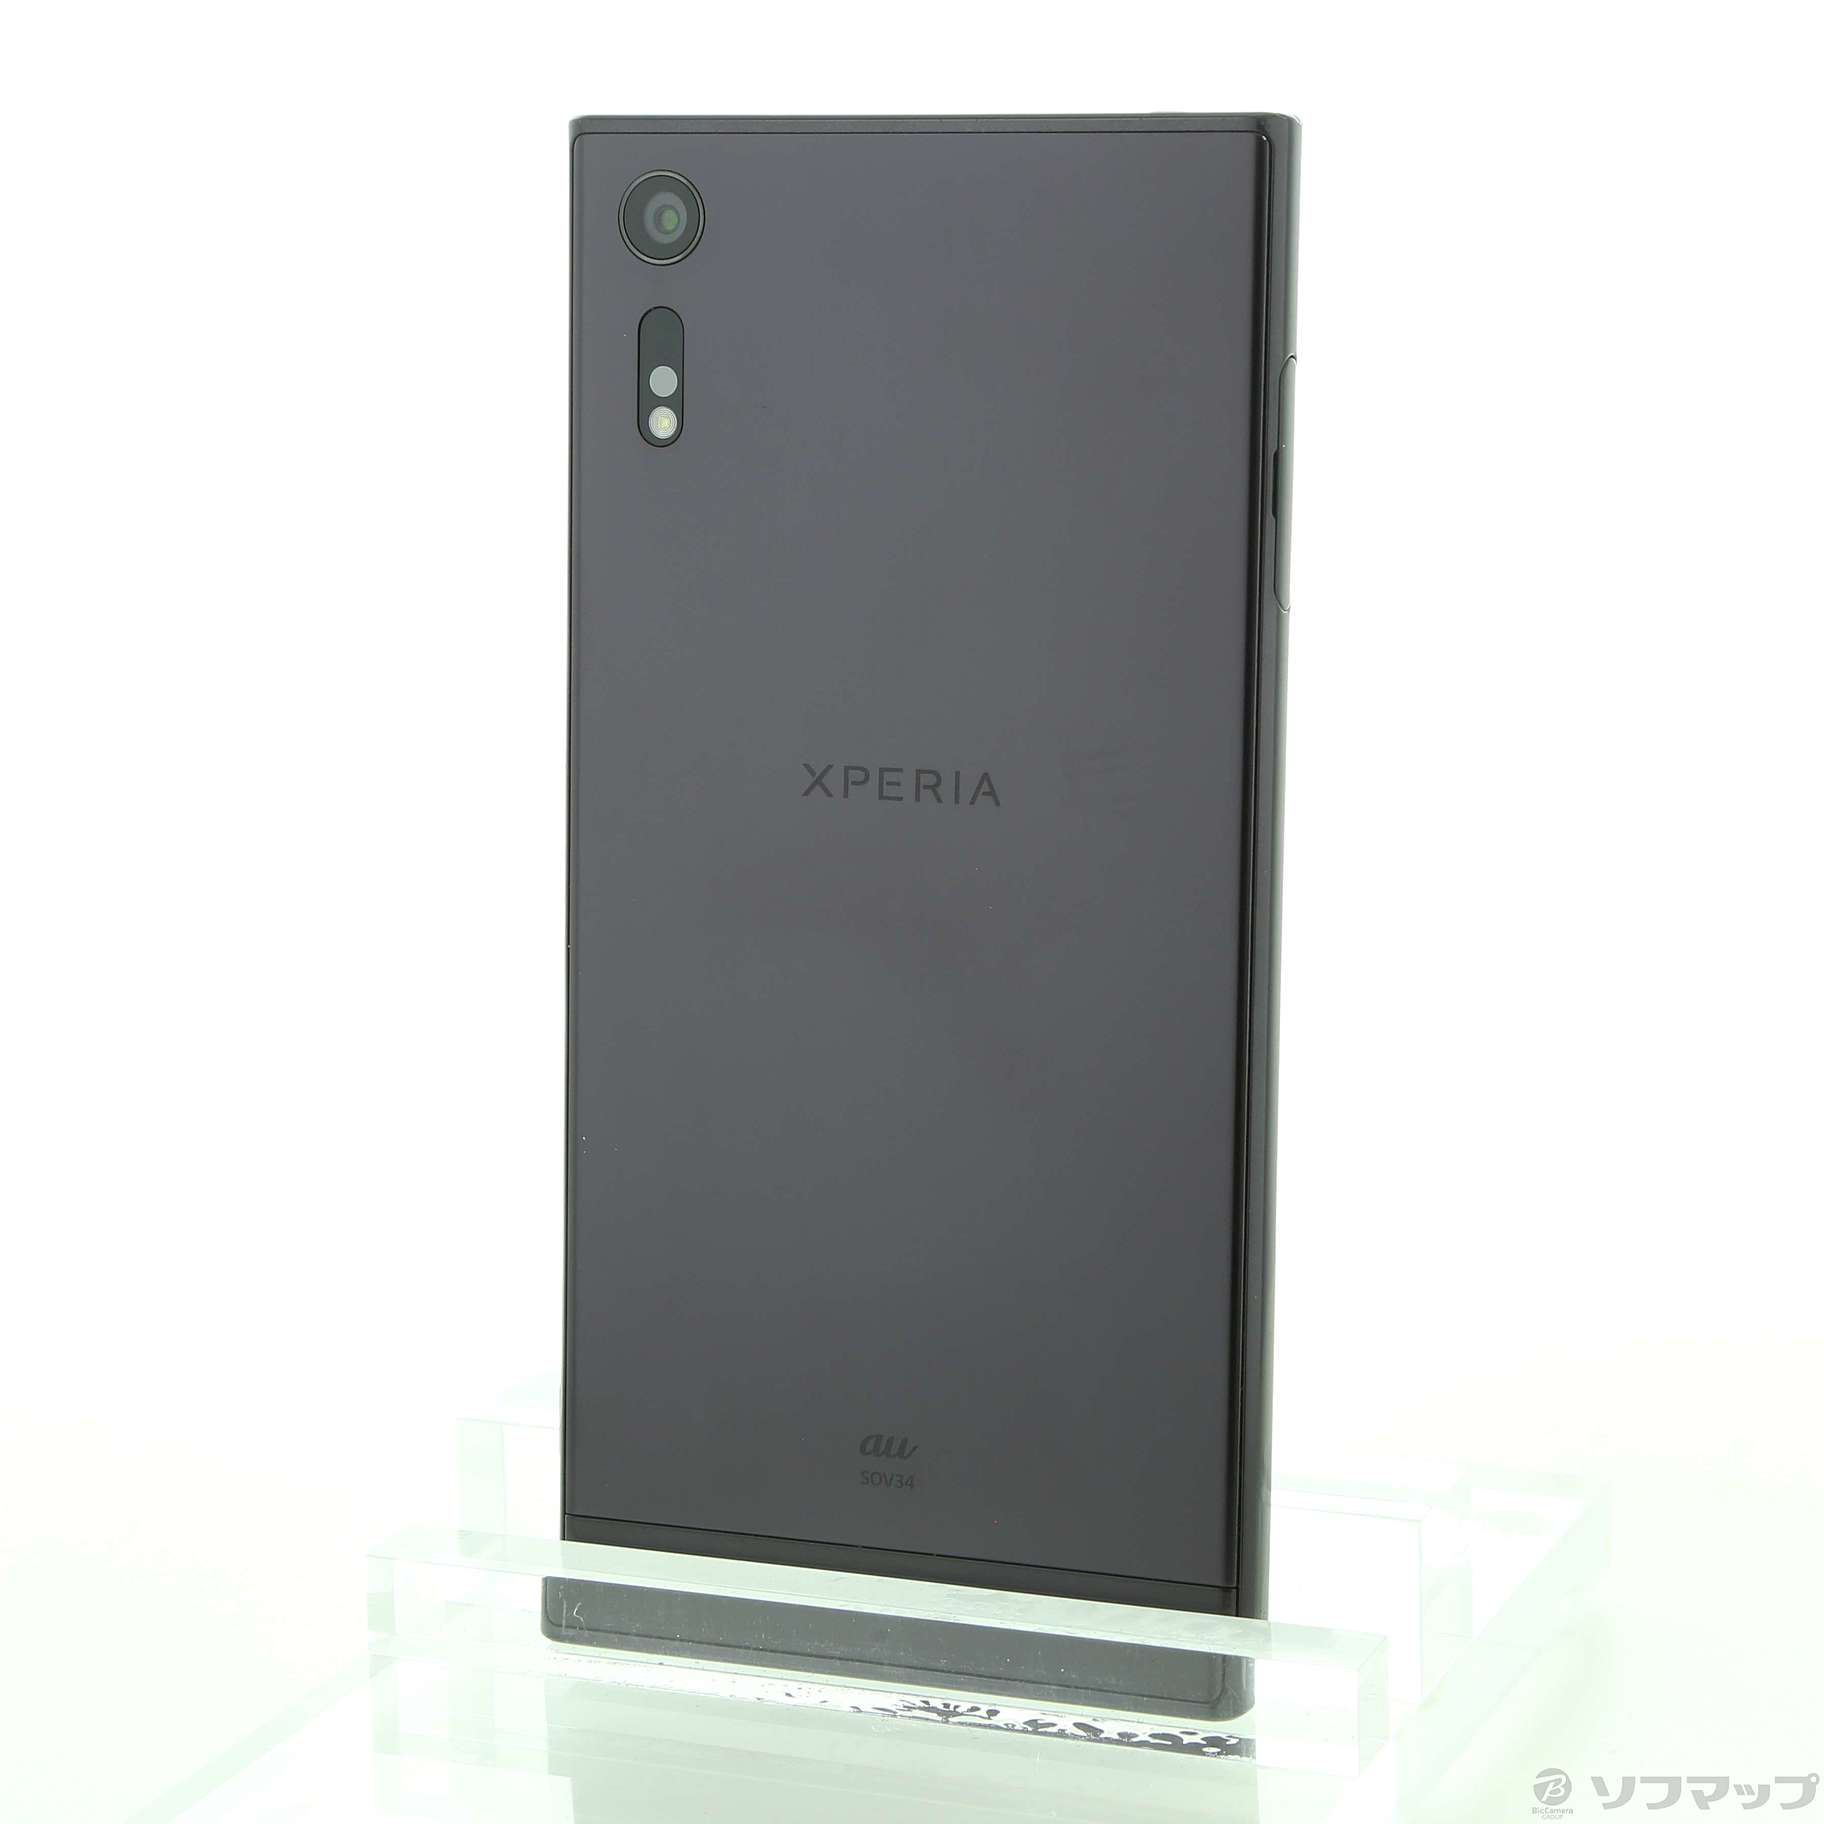 セール対象品 Xperia XZ 32GB ミネラルブラック SOV34 au